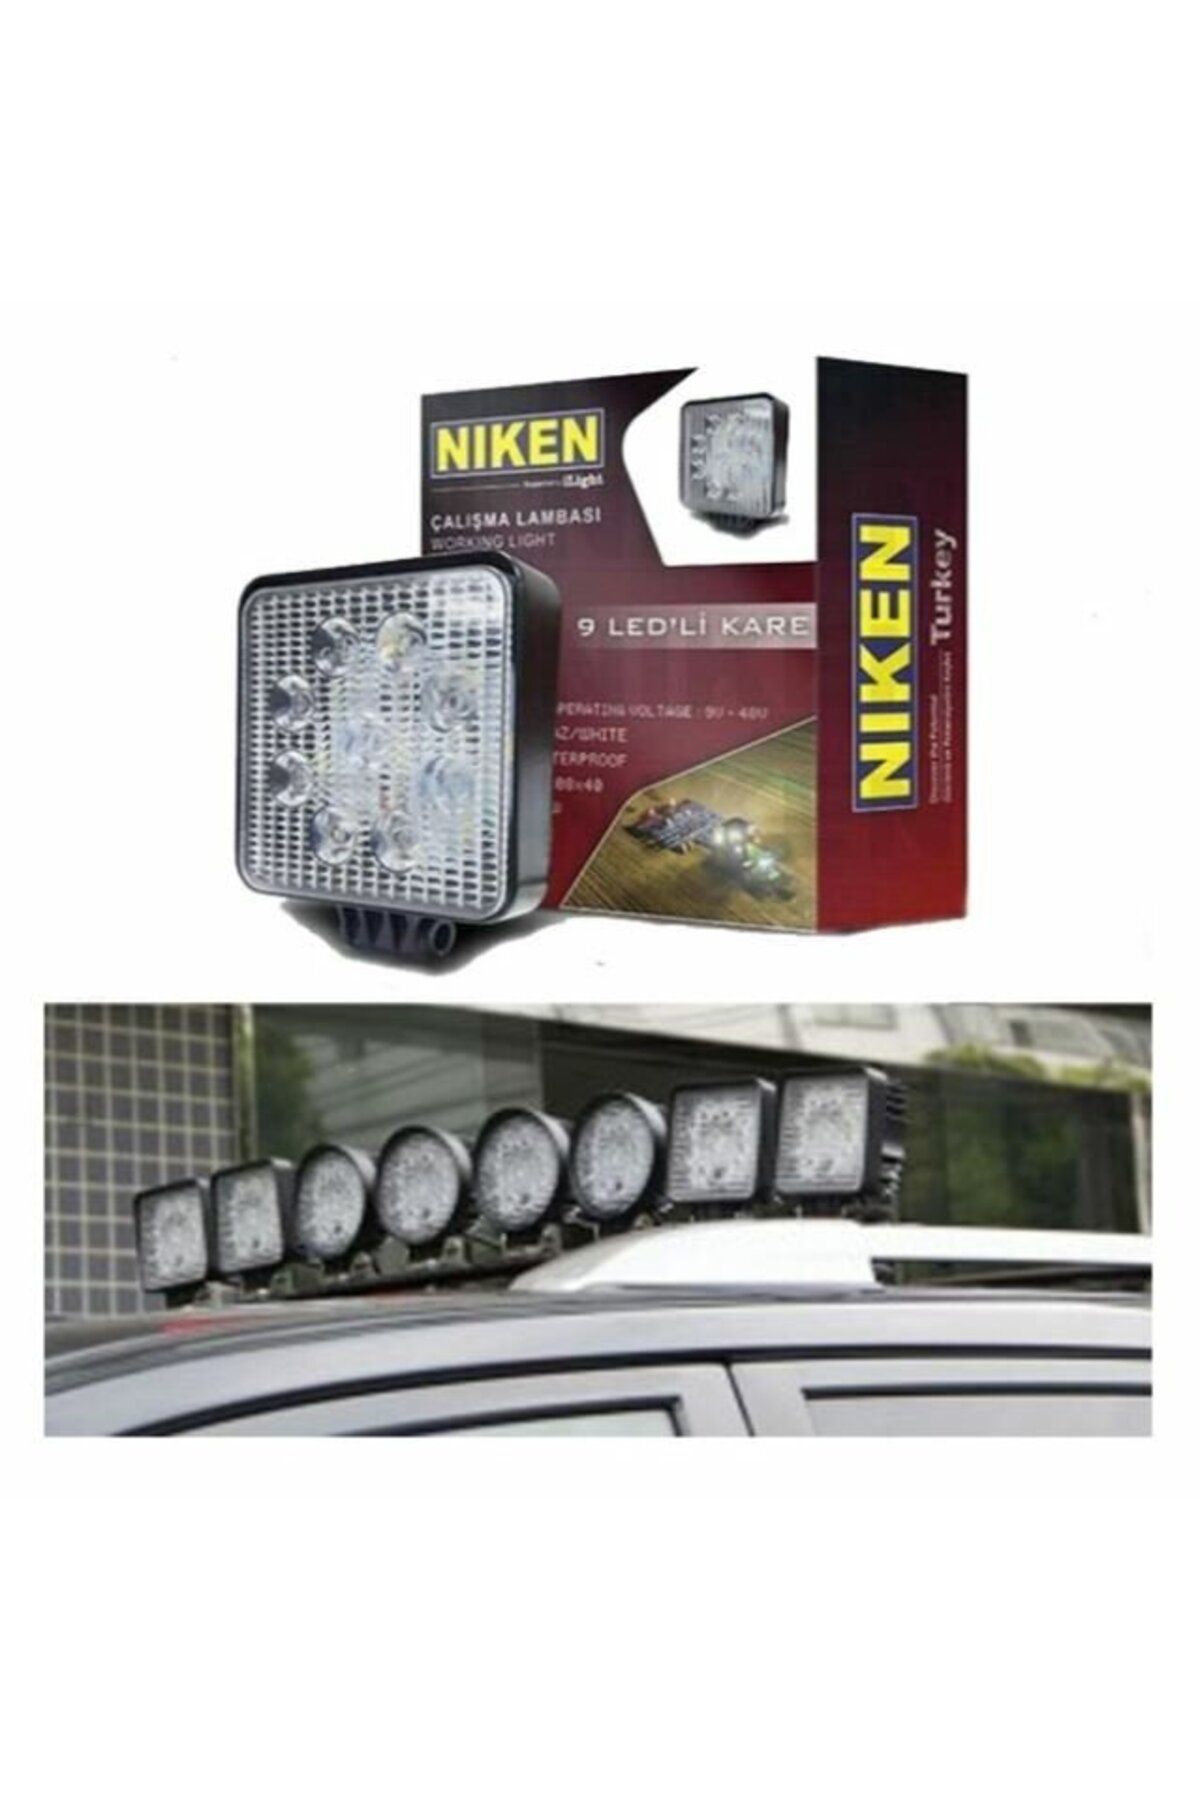 Niken Led çalışma lambası pro 9 ledli off road Uyumlu sis lambası kare tip Niken